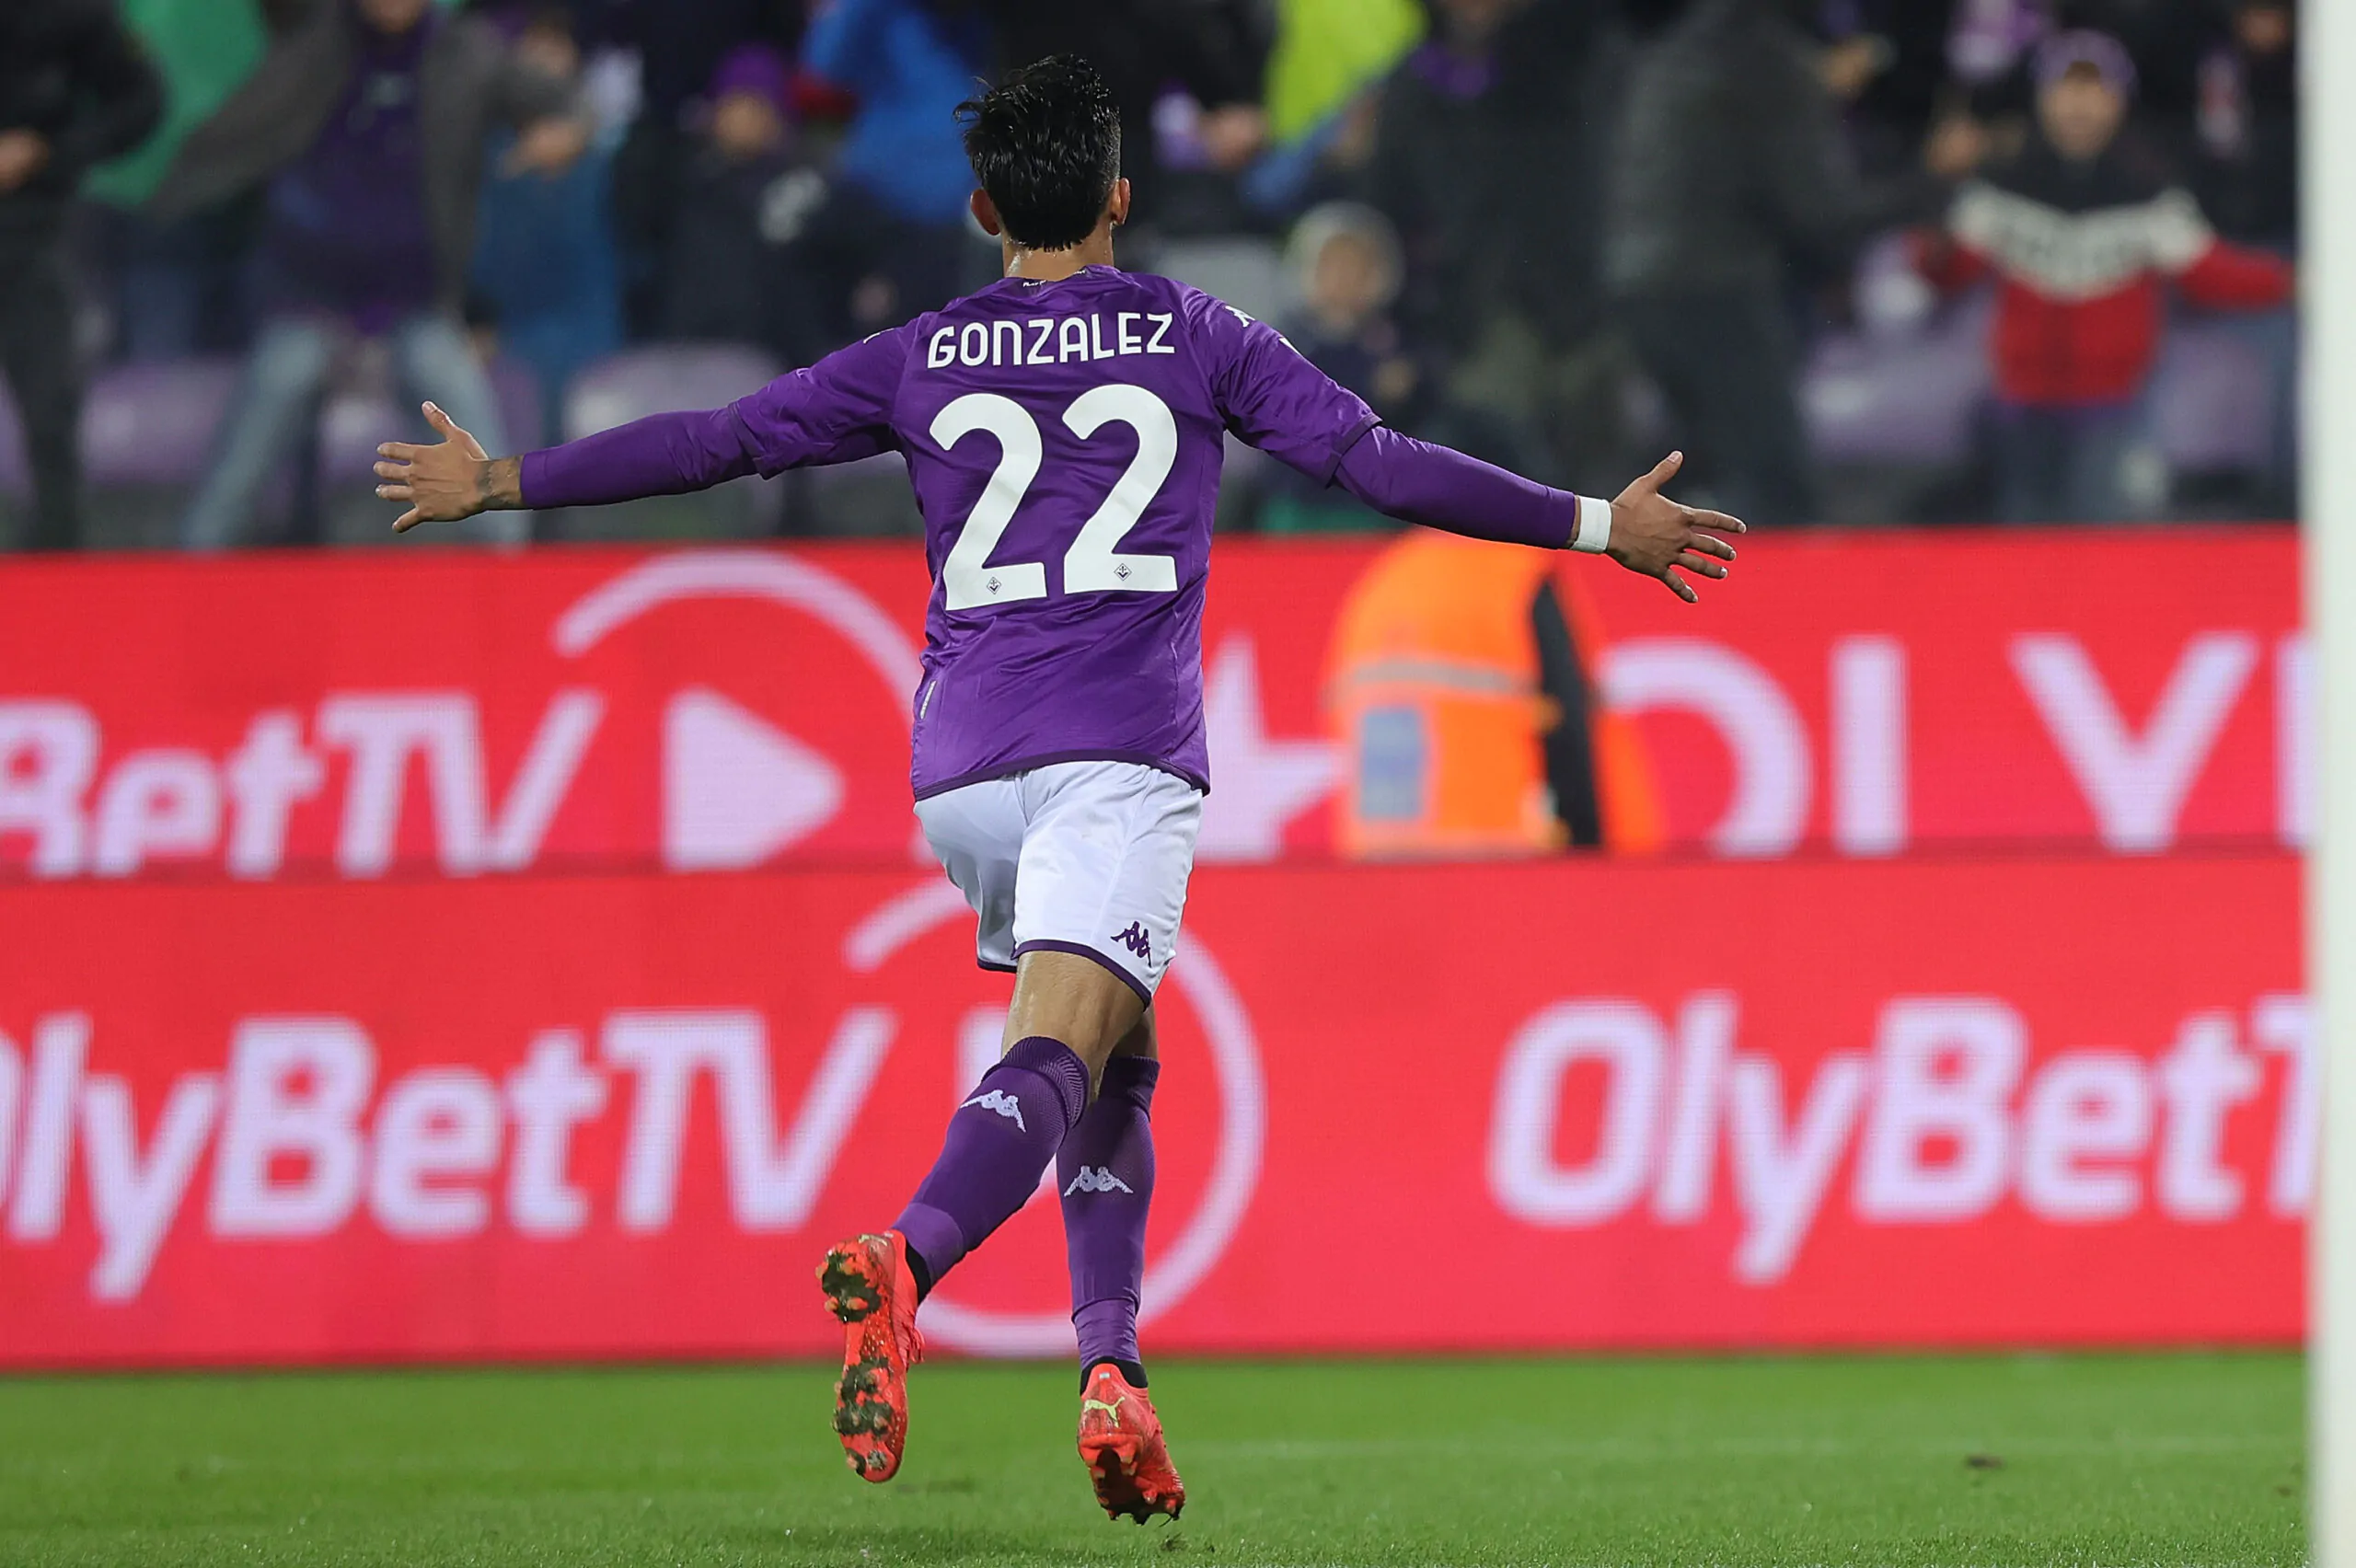 Calciomercato Fiorentina: non solo il Leicester su Nico Gonzalez, un top club forte sul giocatore